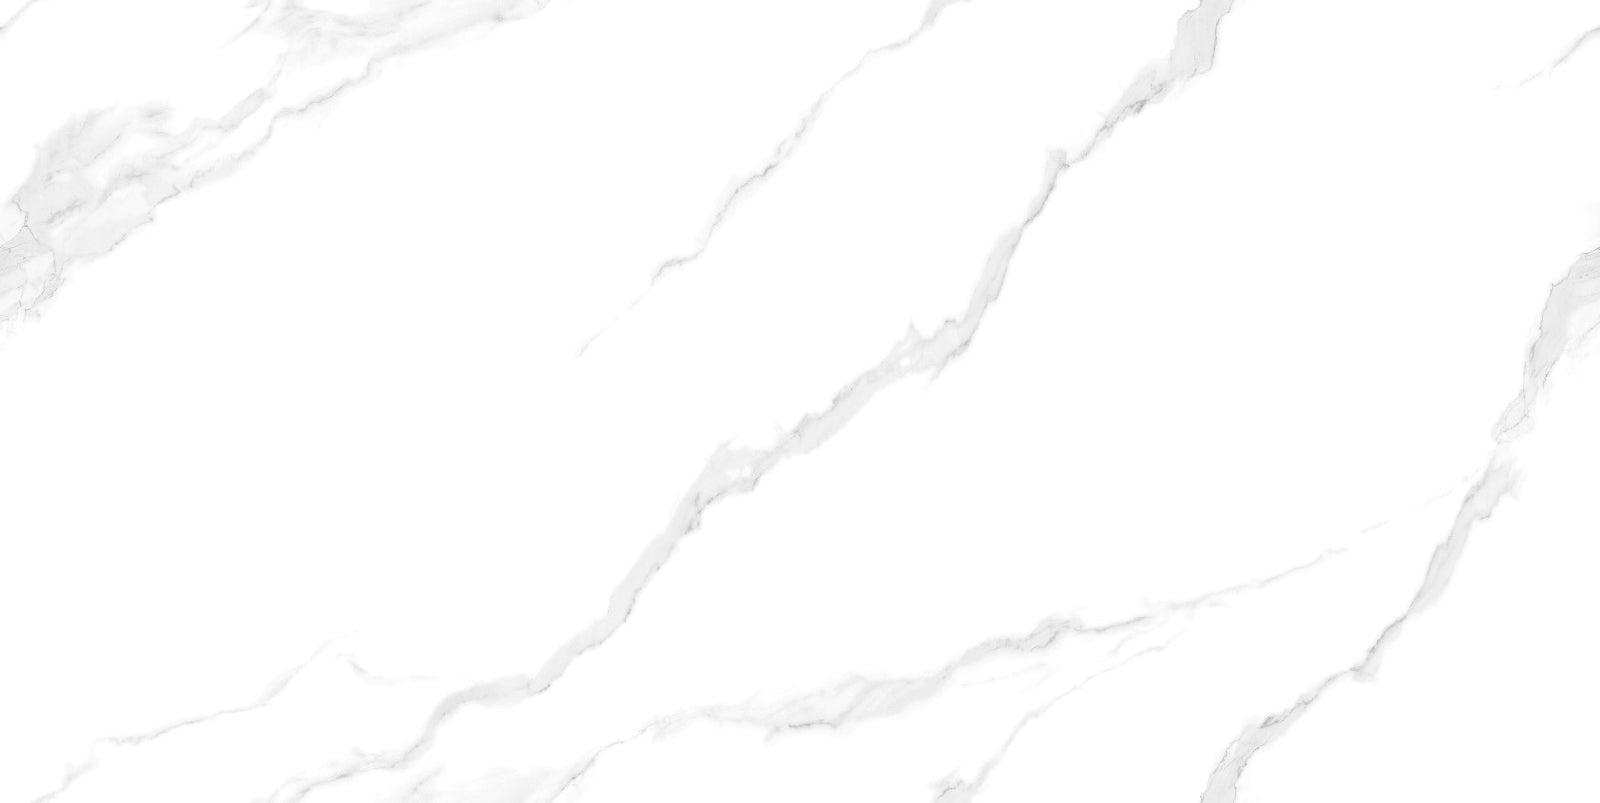 中國佛山瓷磚 China Foshan Marble Tiles Glossy 大理石瓷磚 連紋瓷磚 地磚 墻磚 釉面磚 亮光面雪肌白TC126508 60×120cm